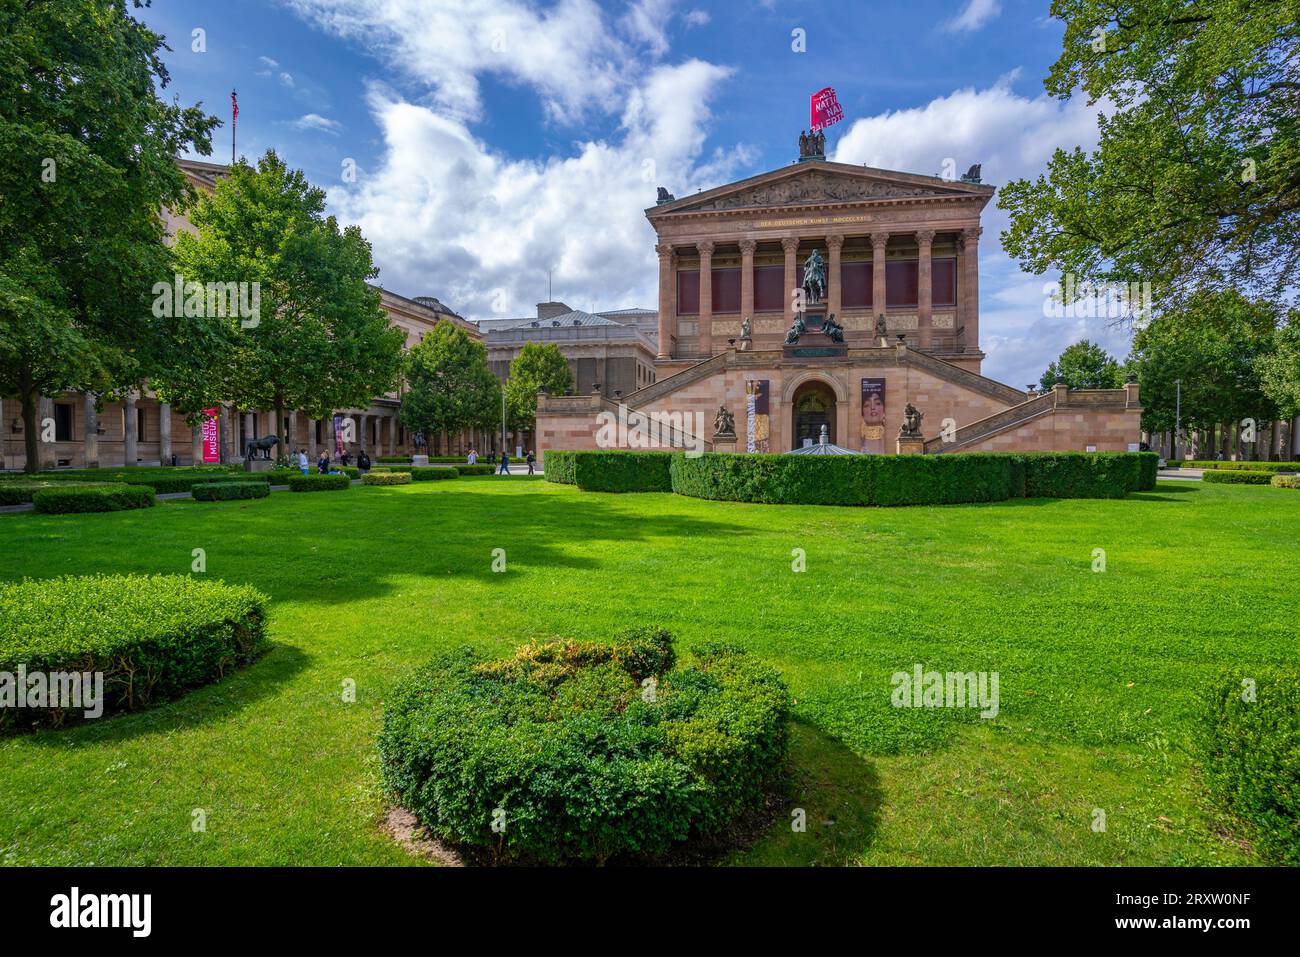 Vue de l'Alte Nationalgalerie et Kolonnadenhof, site du patrimoine mondial de l'UNESCO, île aux musées, Mitte, Berlin, Allemagne, Europe Banque D'Images